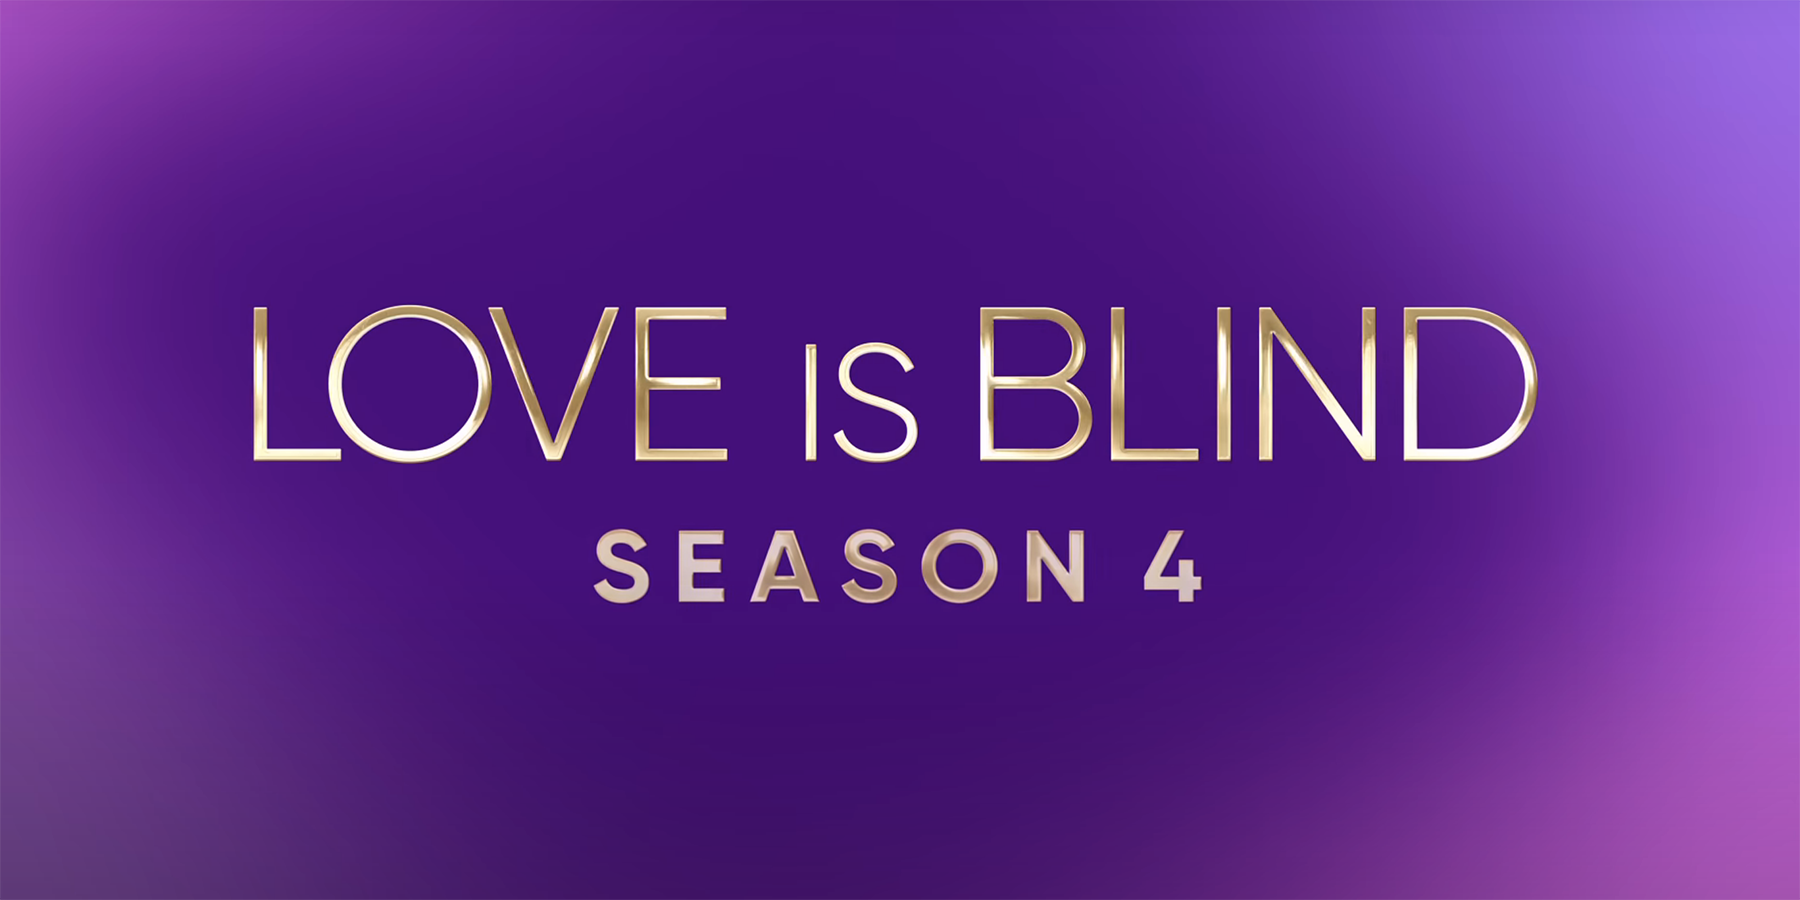 Love Is Blind season 4